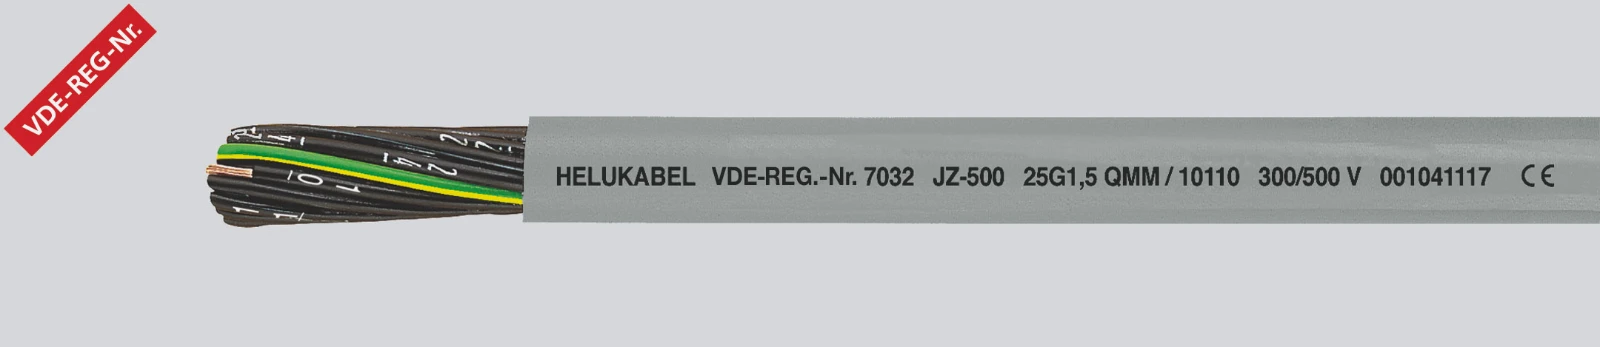 Helukabel Voedingskabel < 1 kV, voor beweegbare toepassingen JZ-500